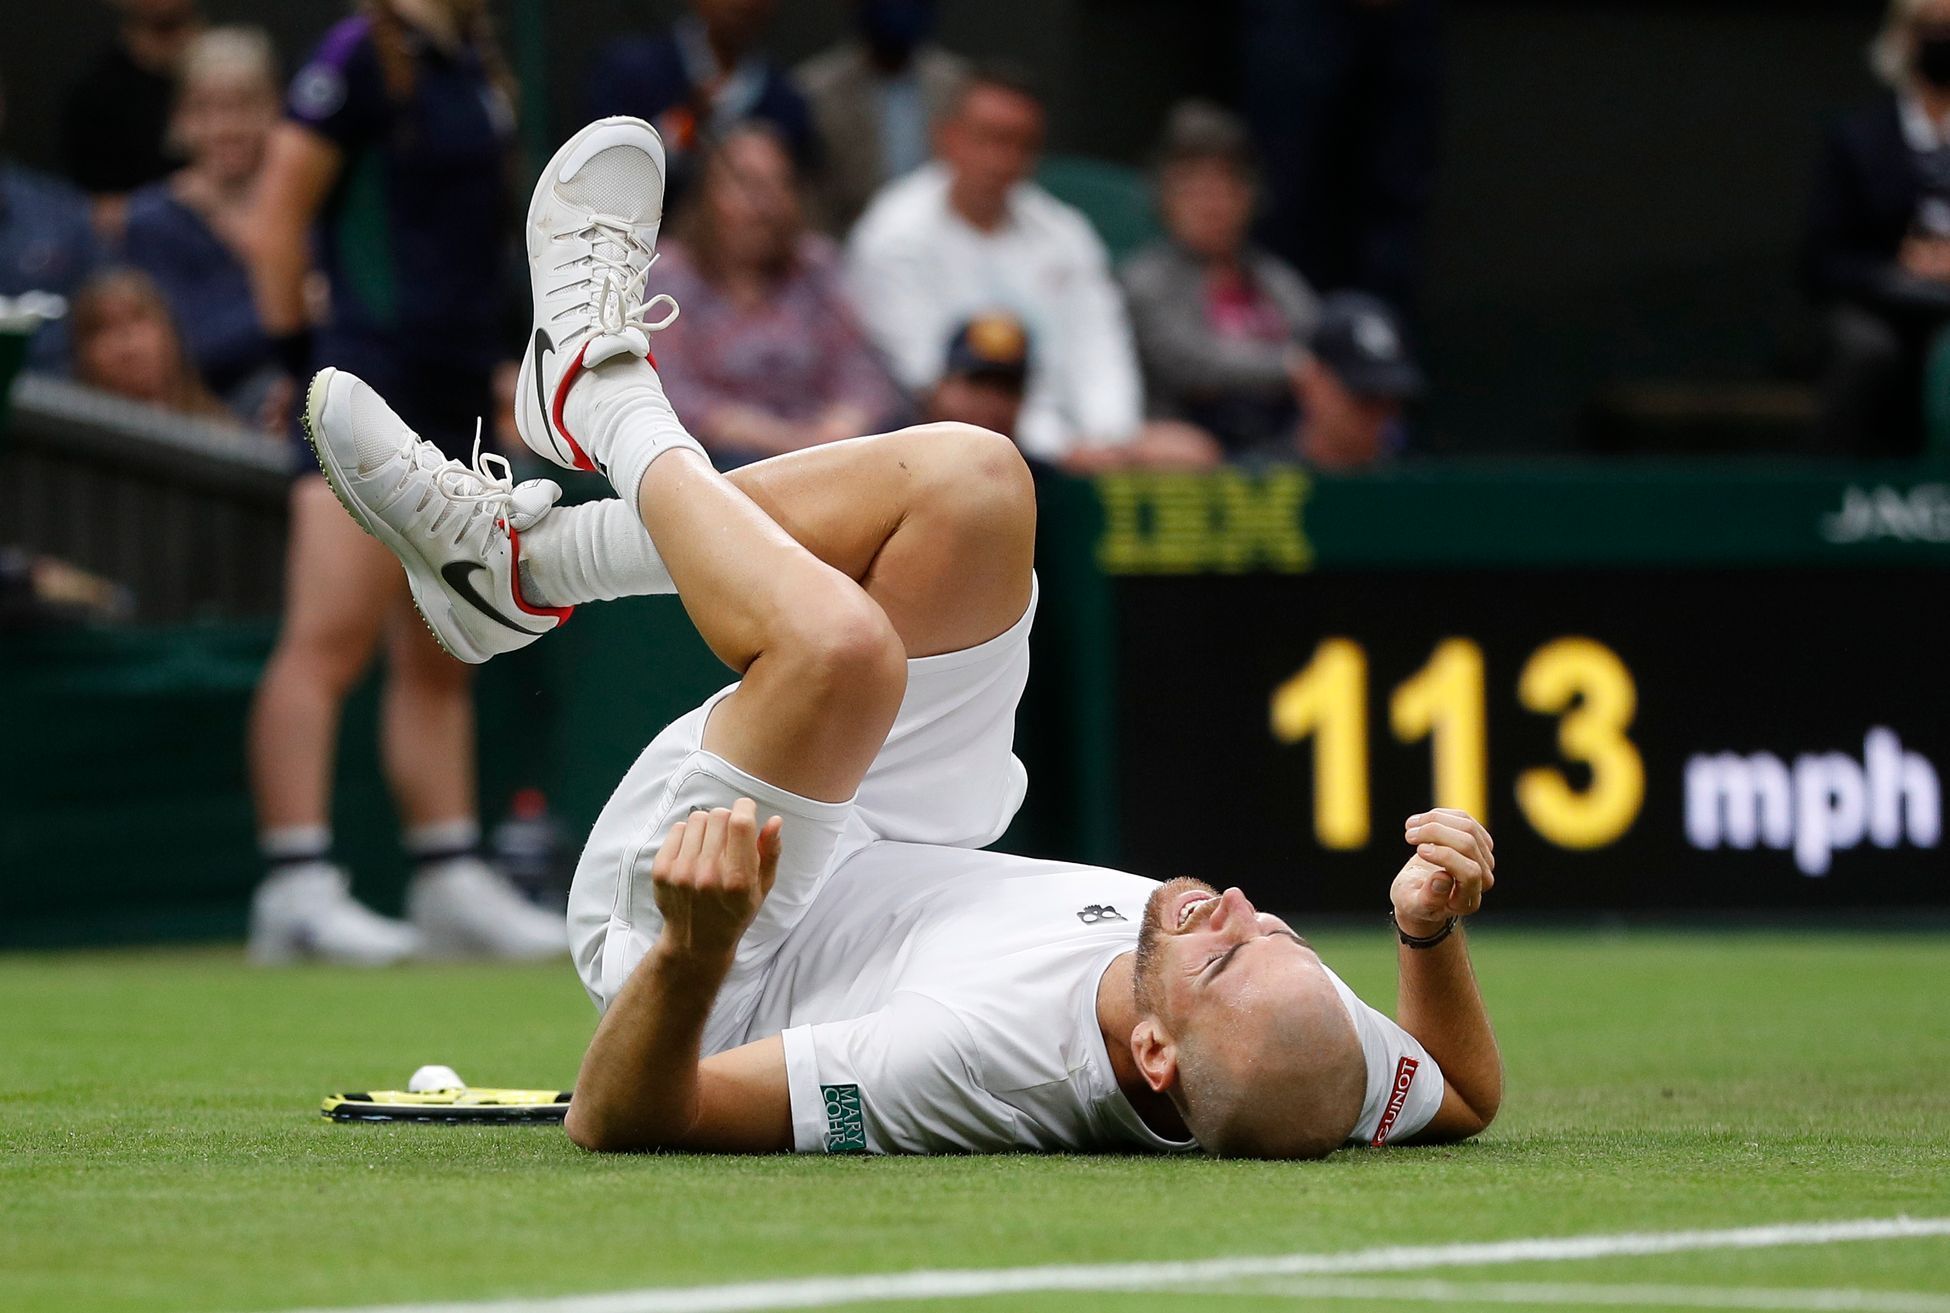 Adrian Mannarino - Roger Federer, Wimbledon 2021